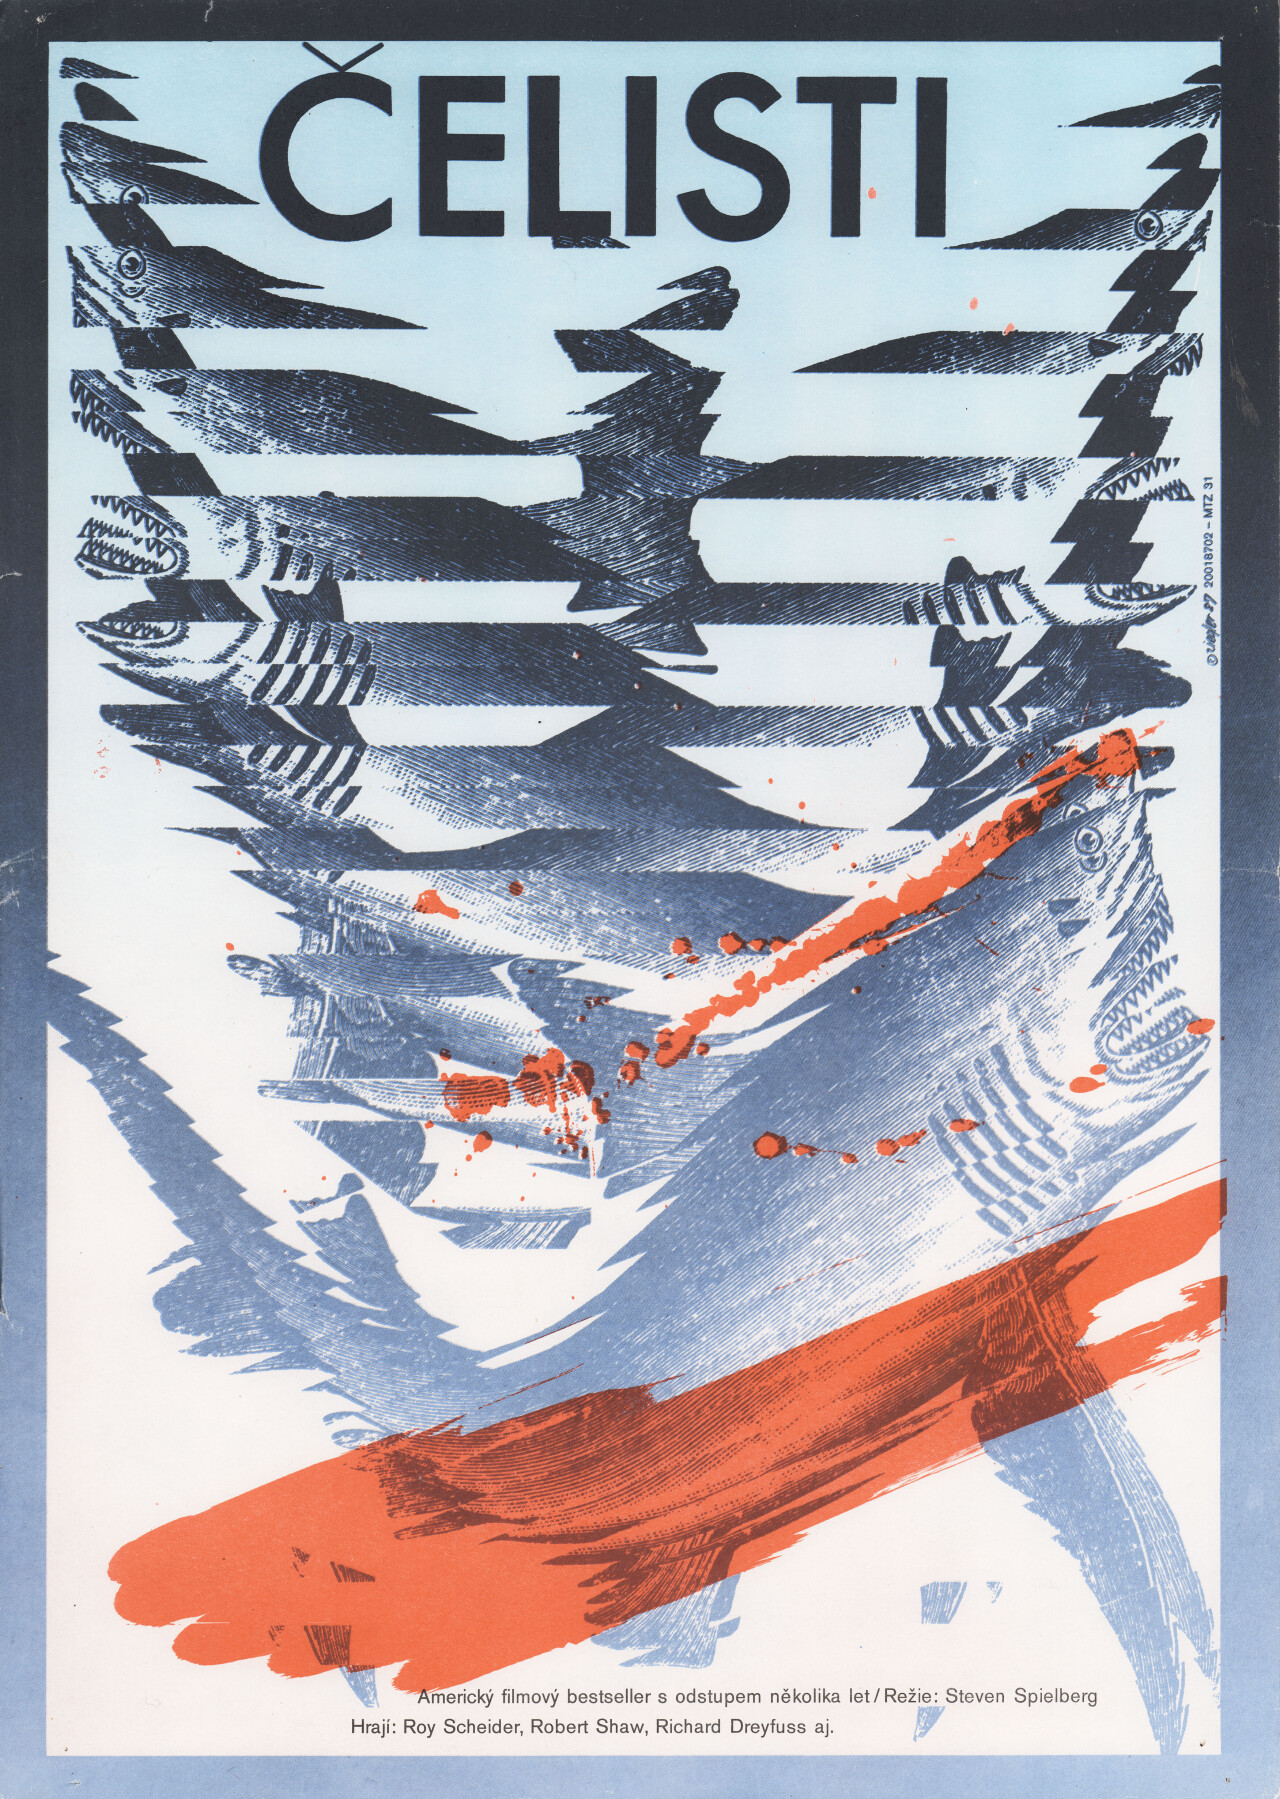 Челюсти (Jaws, 1975), режиссёр Стивен Спилберг, чехословацкий постер к фильму, автор Зденек Циглер (монстры, 1987 год) (2)